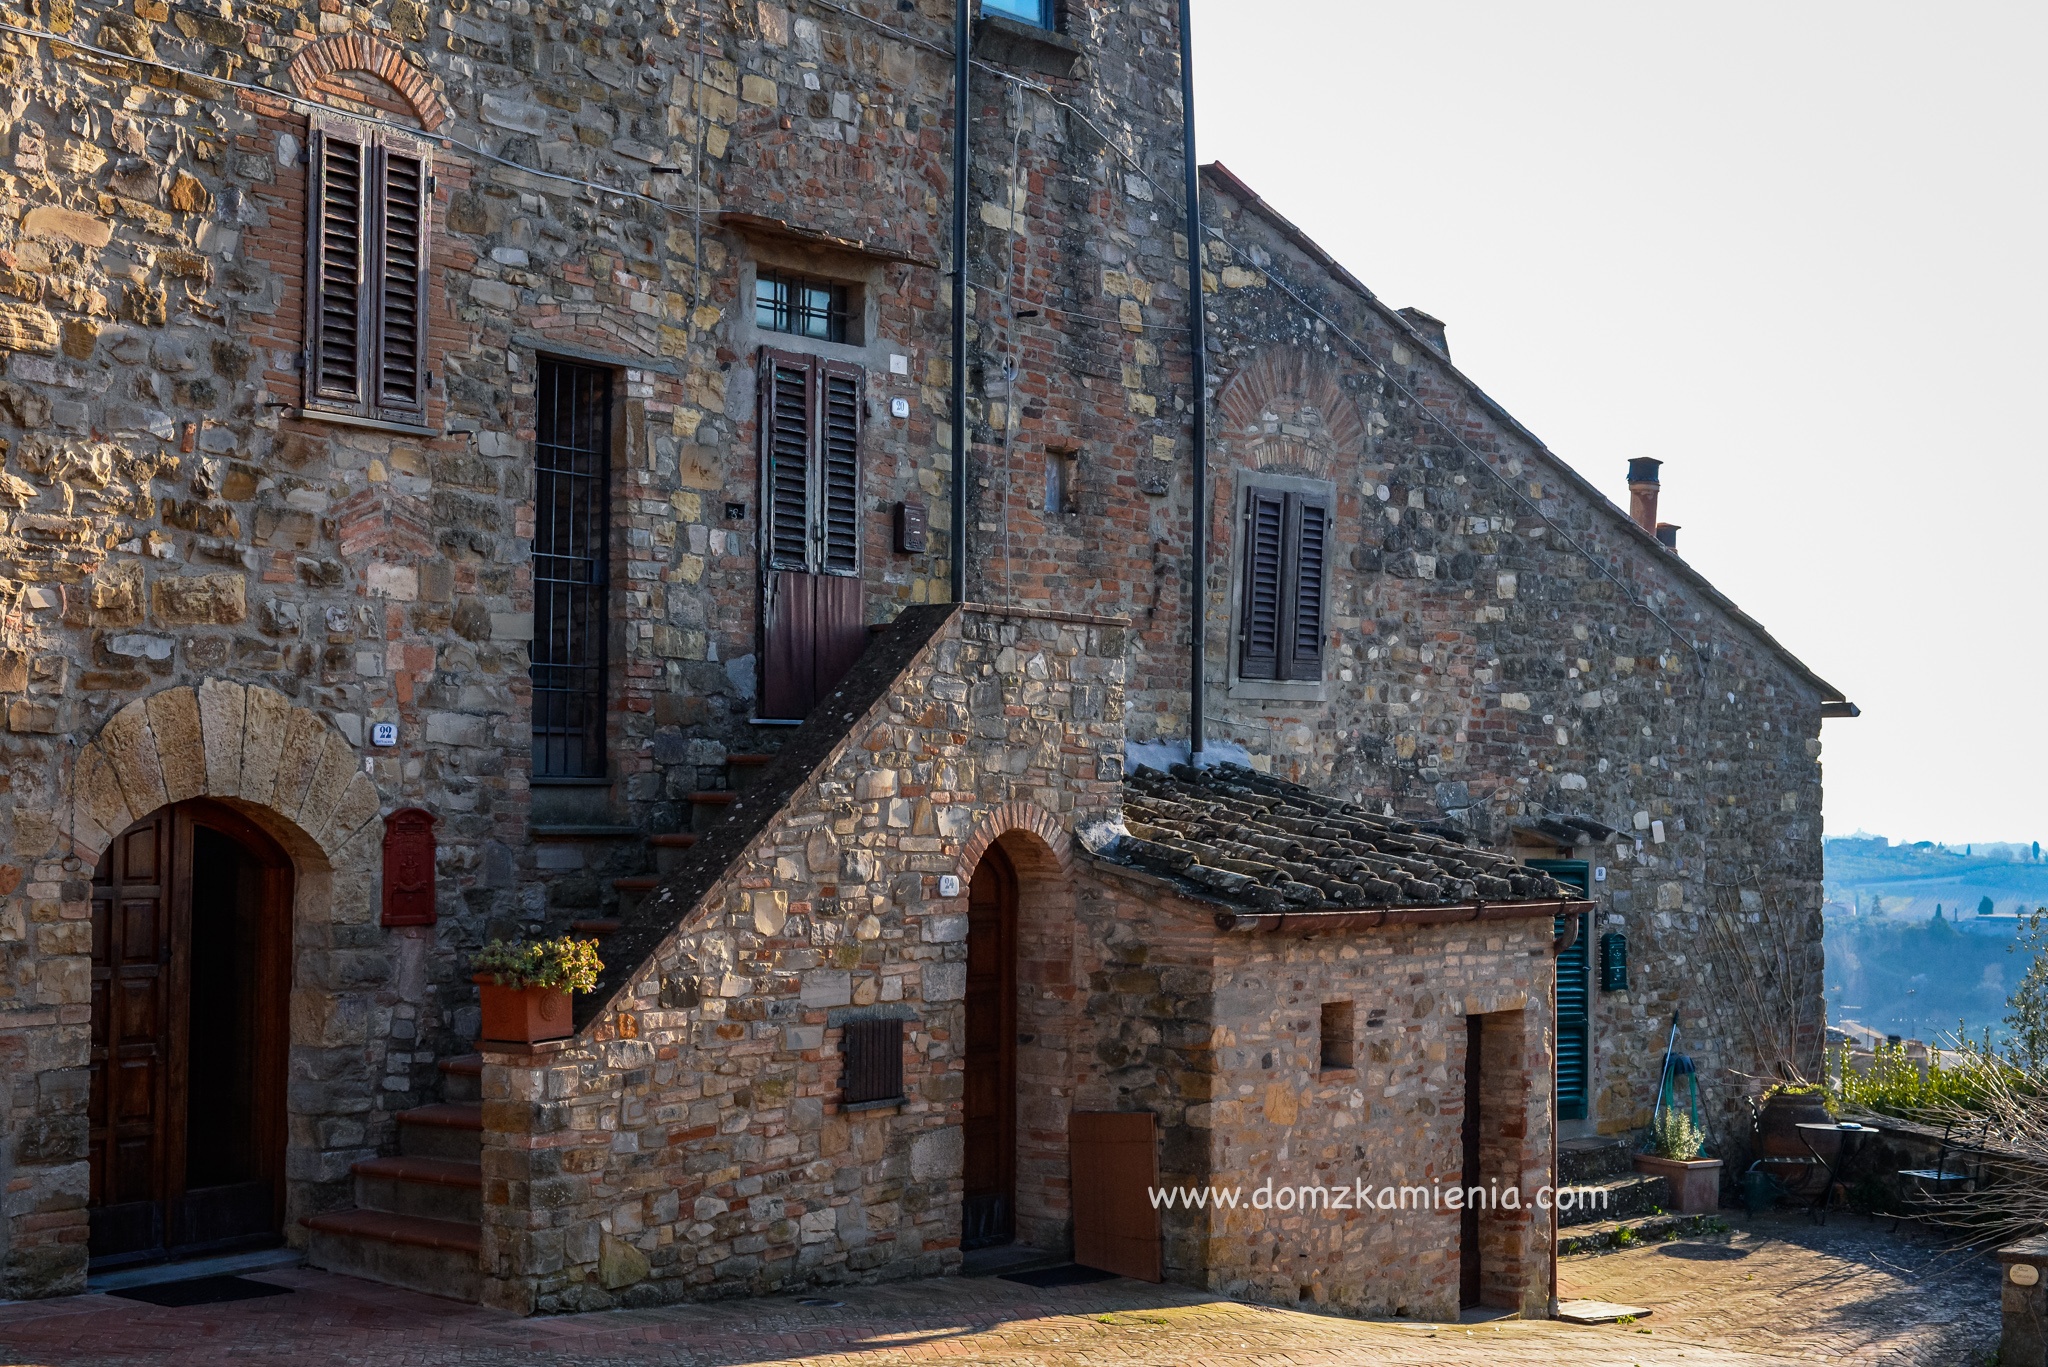 Dom z Kamienia blog, Toskania nieznana